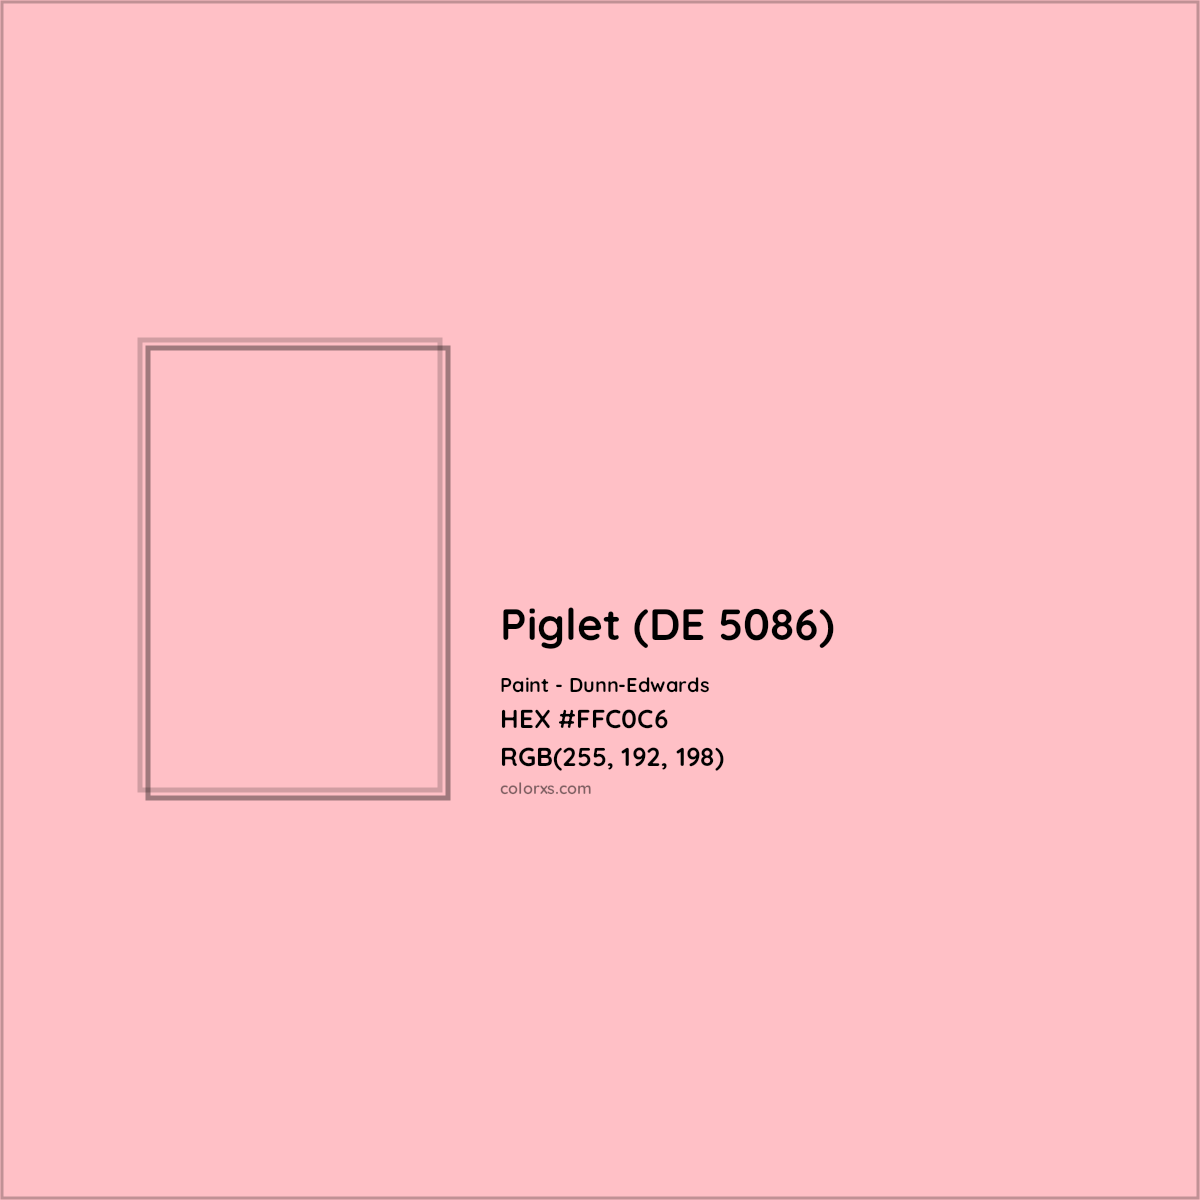 HEX #FFC0C6 Piglet (DE 5086) Paint Dunn-Edwards - Color Code